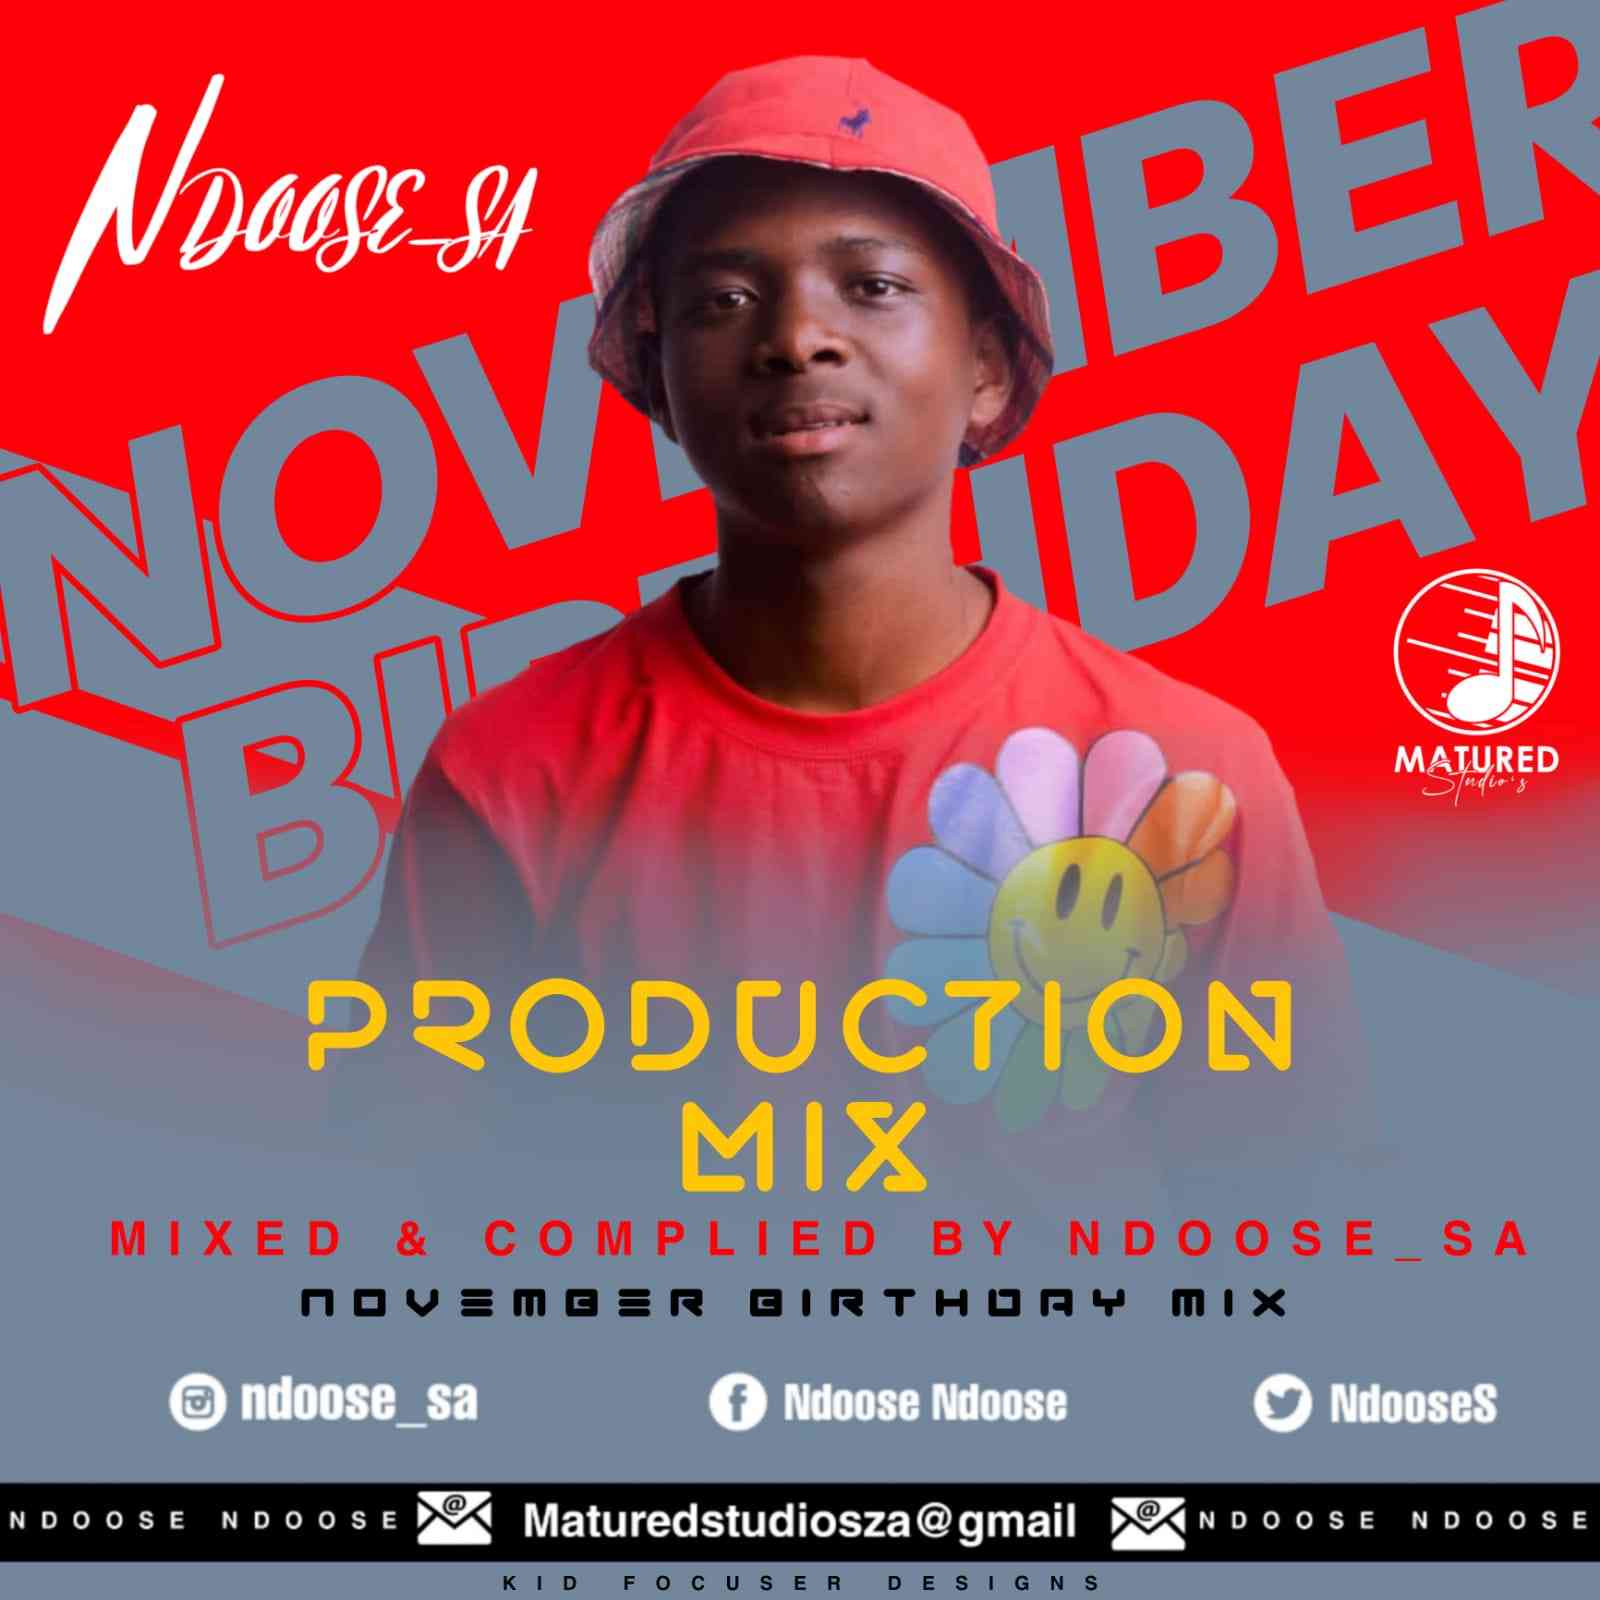 Ndoose SA November Birthday Mix (100% Production Mix) 